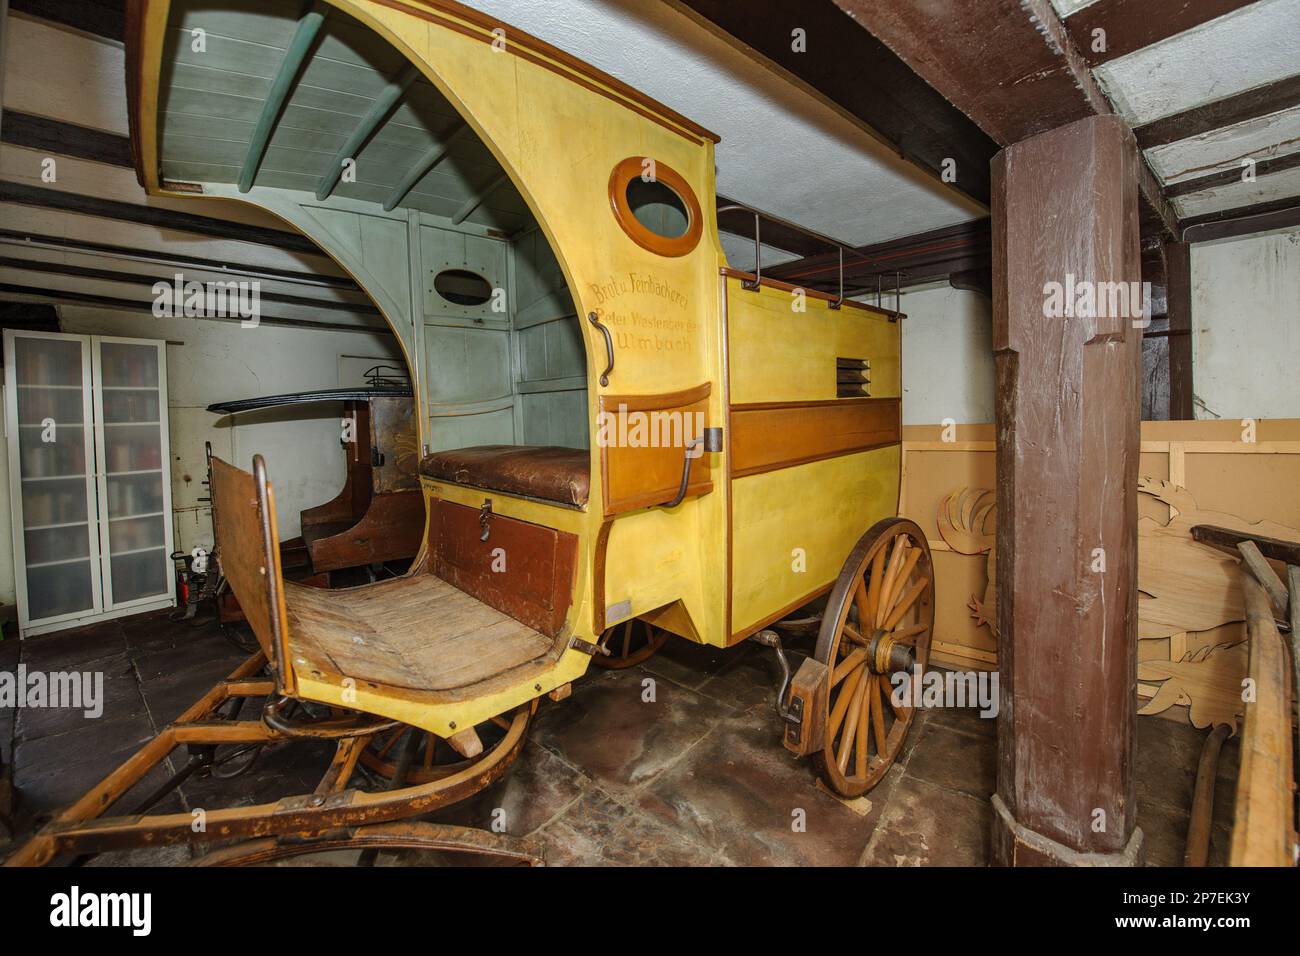 einachsige Kutsche mit Vordach in ehemaliger Geräteschuppen von Museum Grimm-Haus, Steinau an der Straße, Hessen, Deutschland, Europa Stock Photo